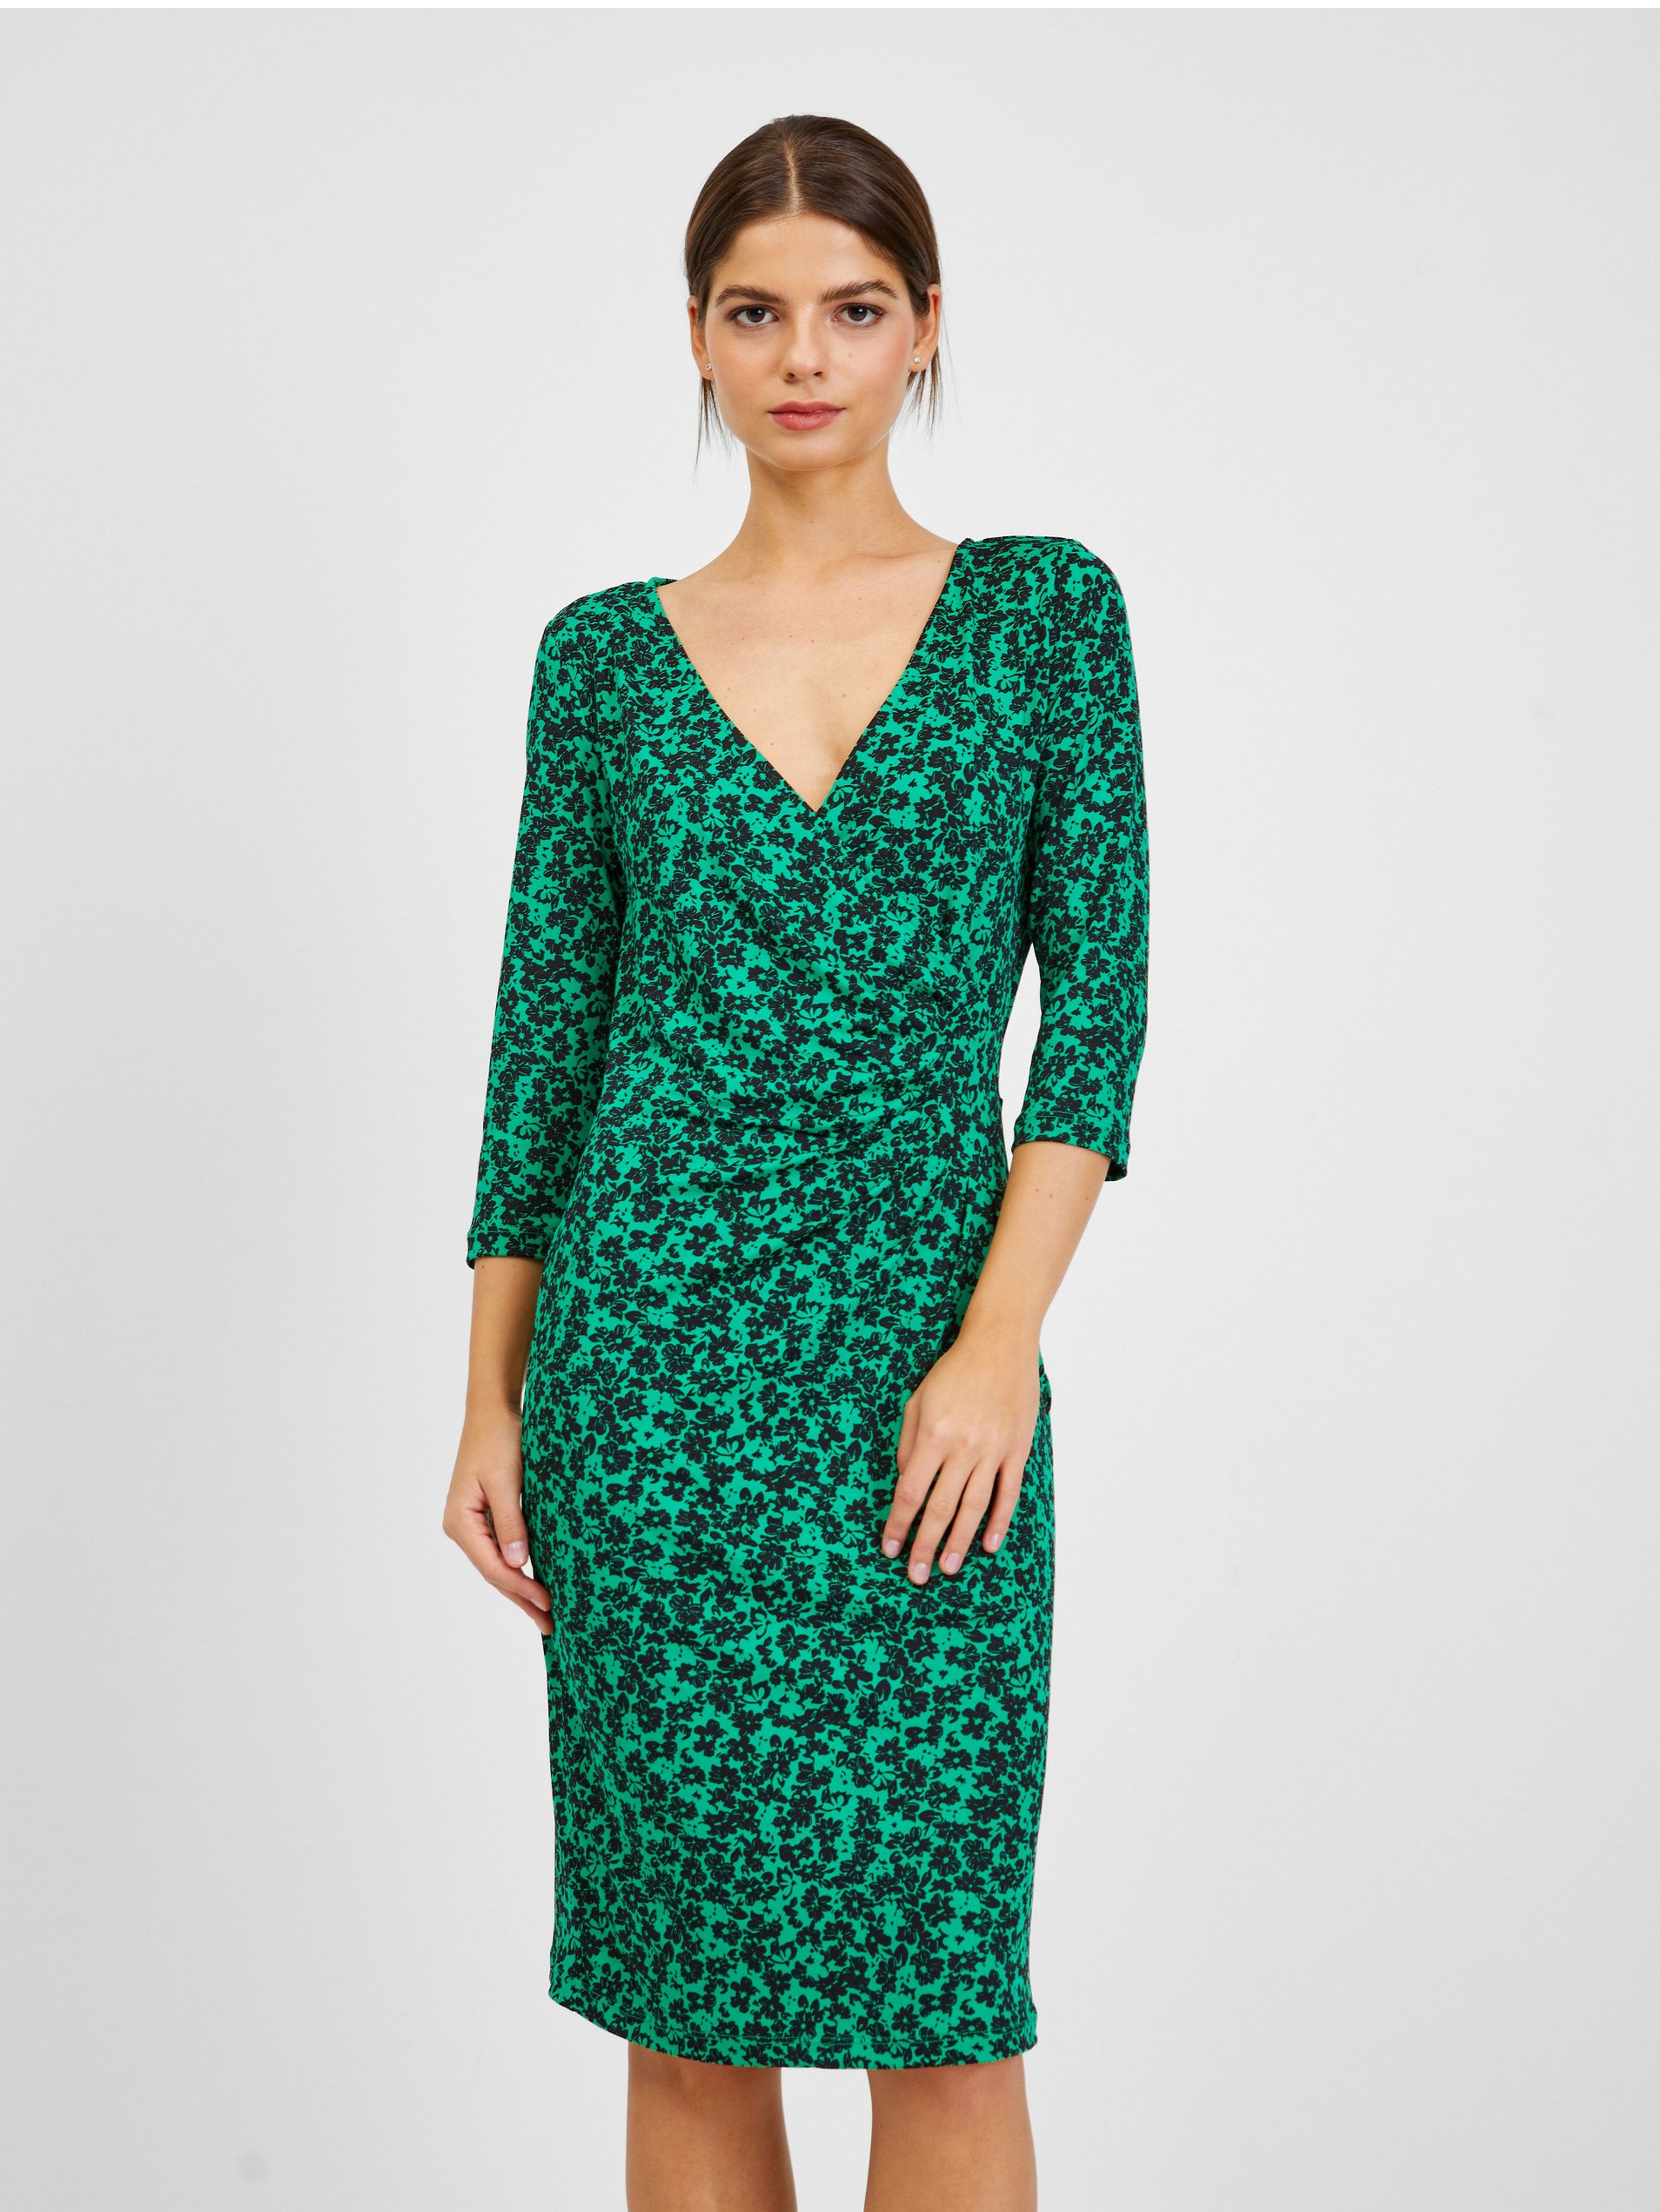 Černo-zelené dámské květované šaty ORSAY